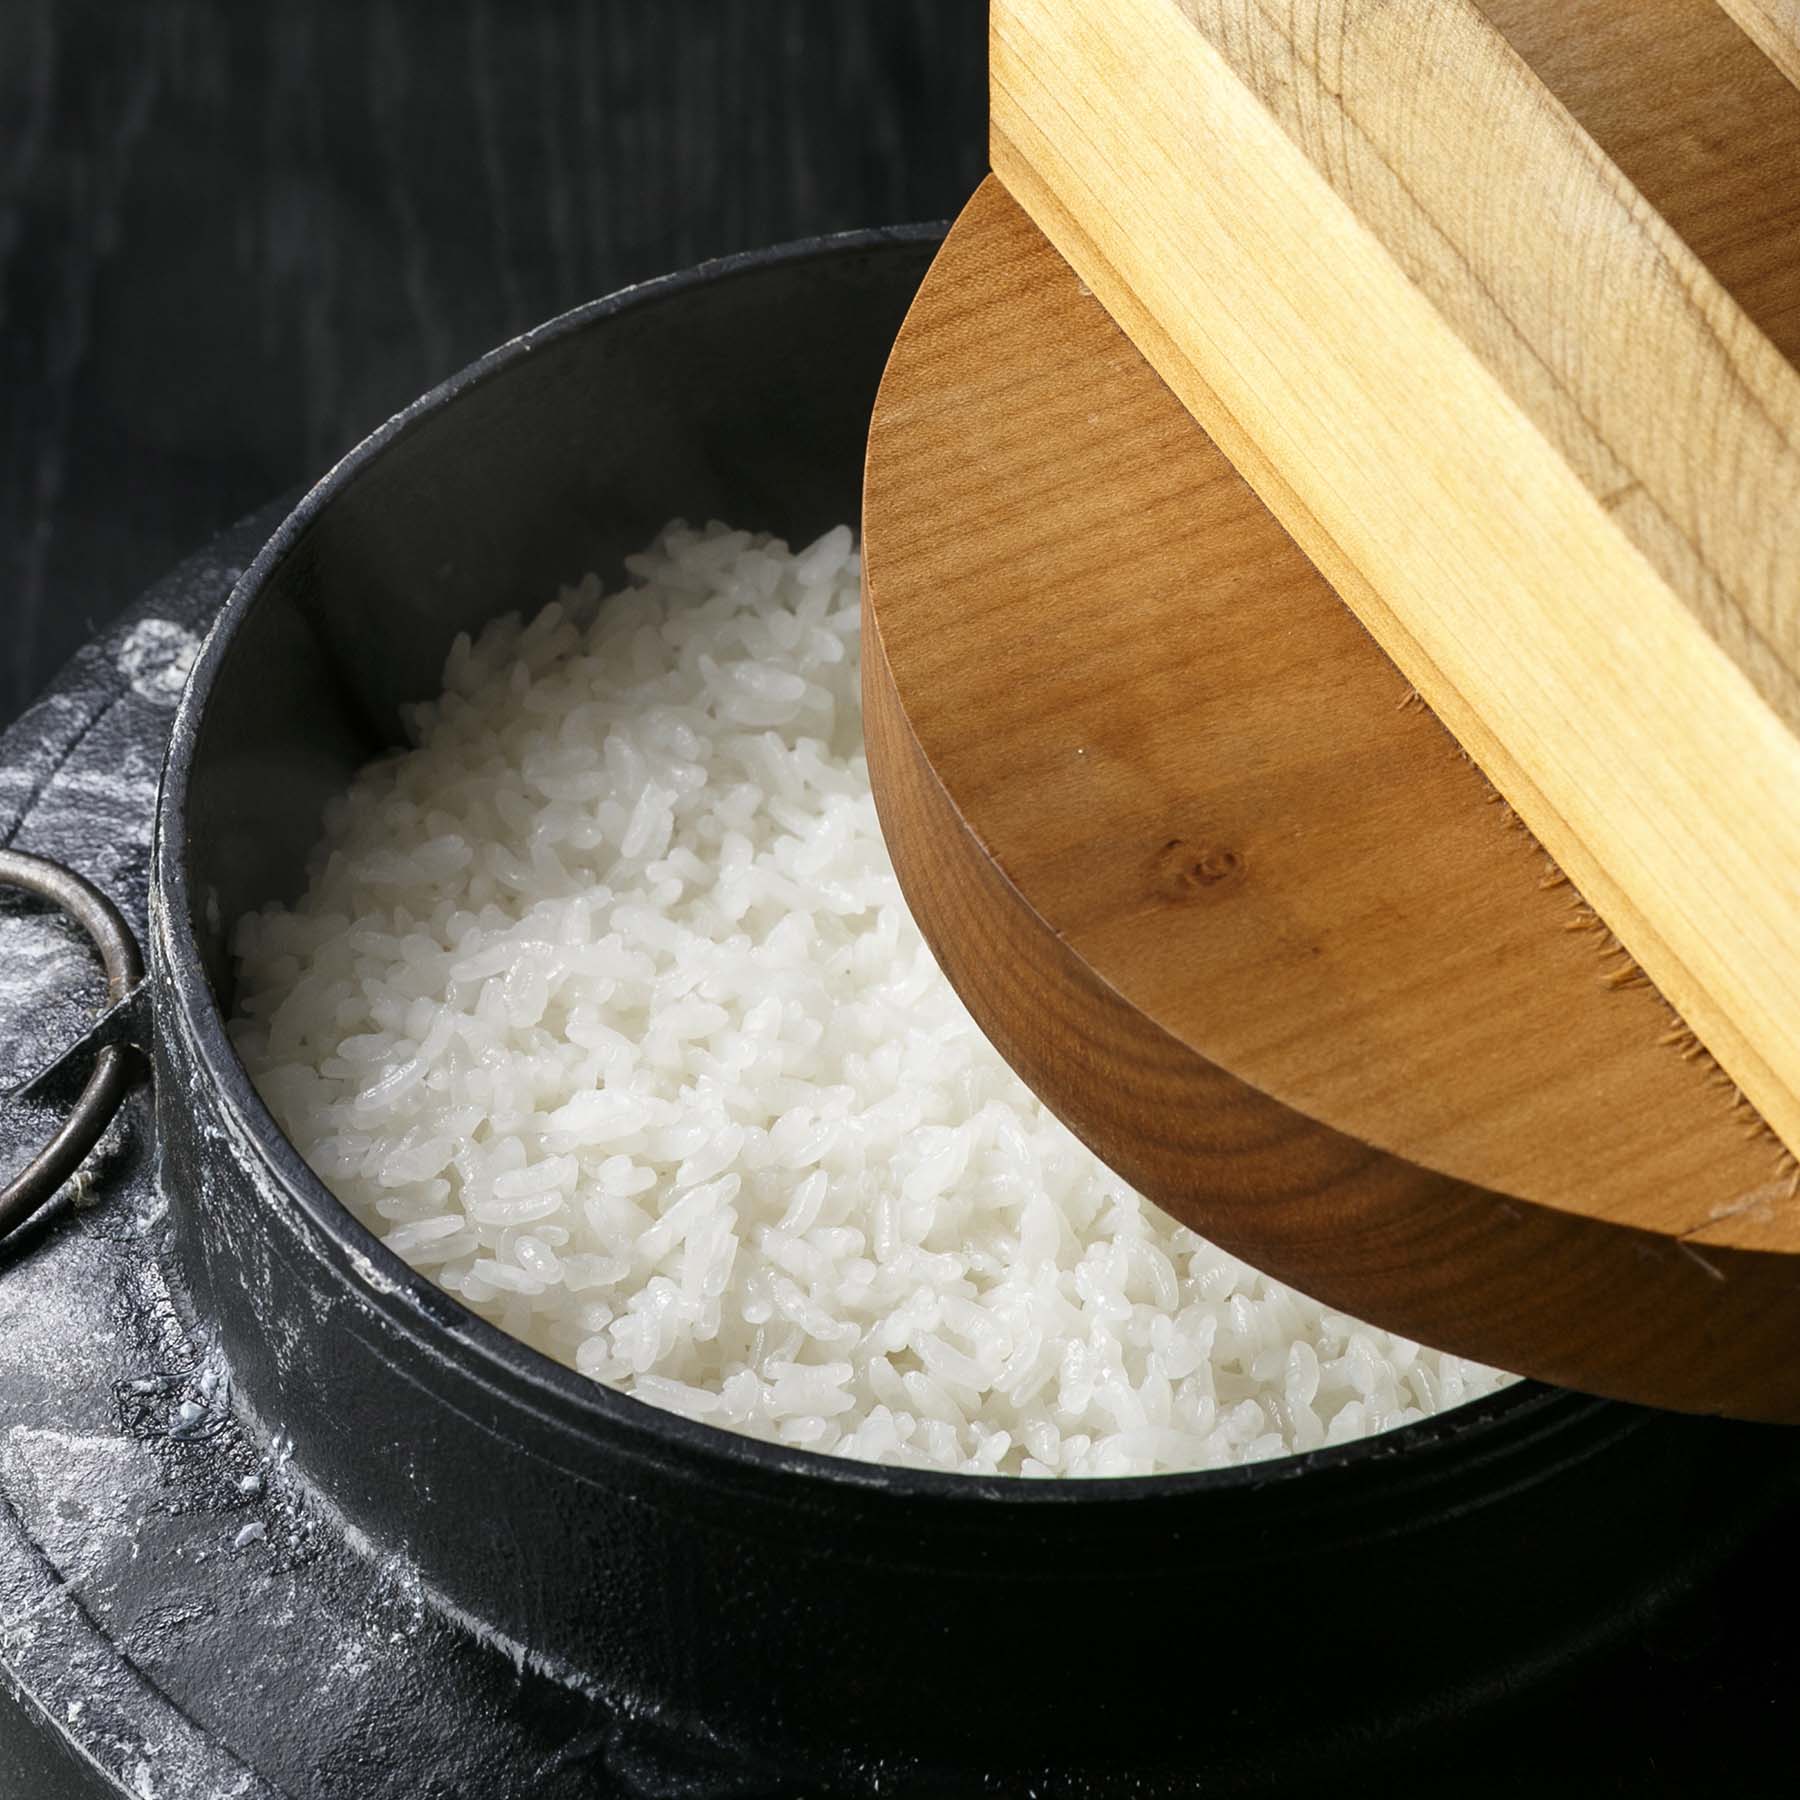 特別栽培米新潟産コシヒカリ5kg 定期便9回